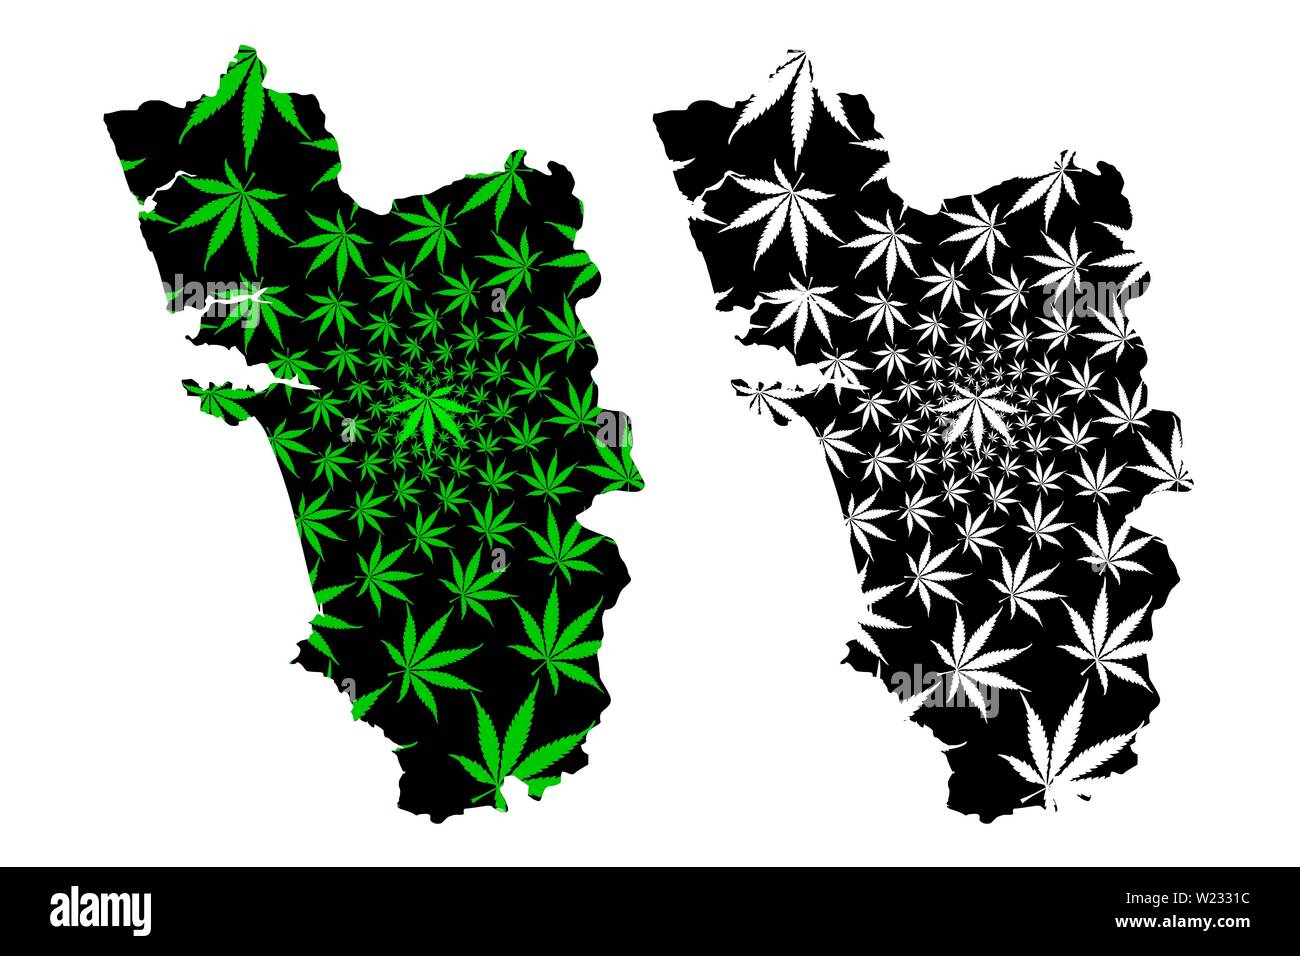 Goa (États et territoires de l'union de l'Inde, États fédérés, République de l'Inde) la carte est conçue de feuilles de cannabis vert et noir, Goa state map made of Illustration de Vecteur